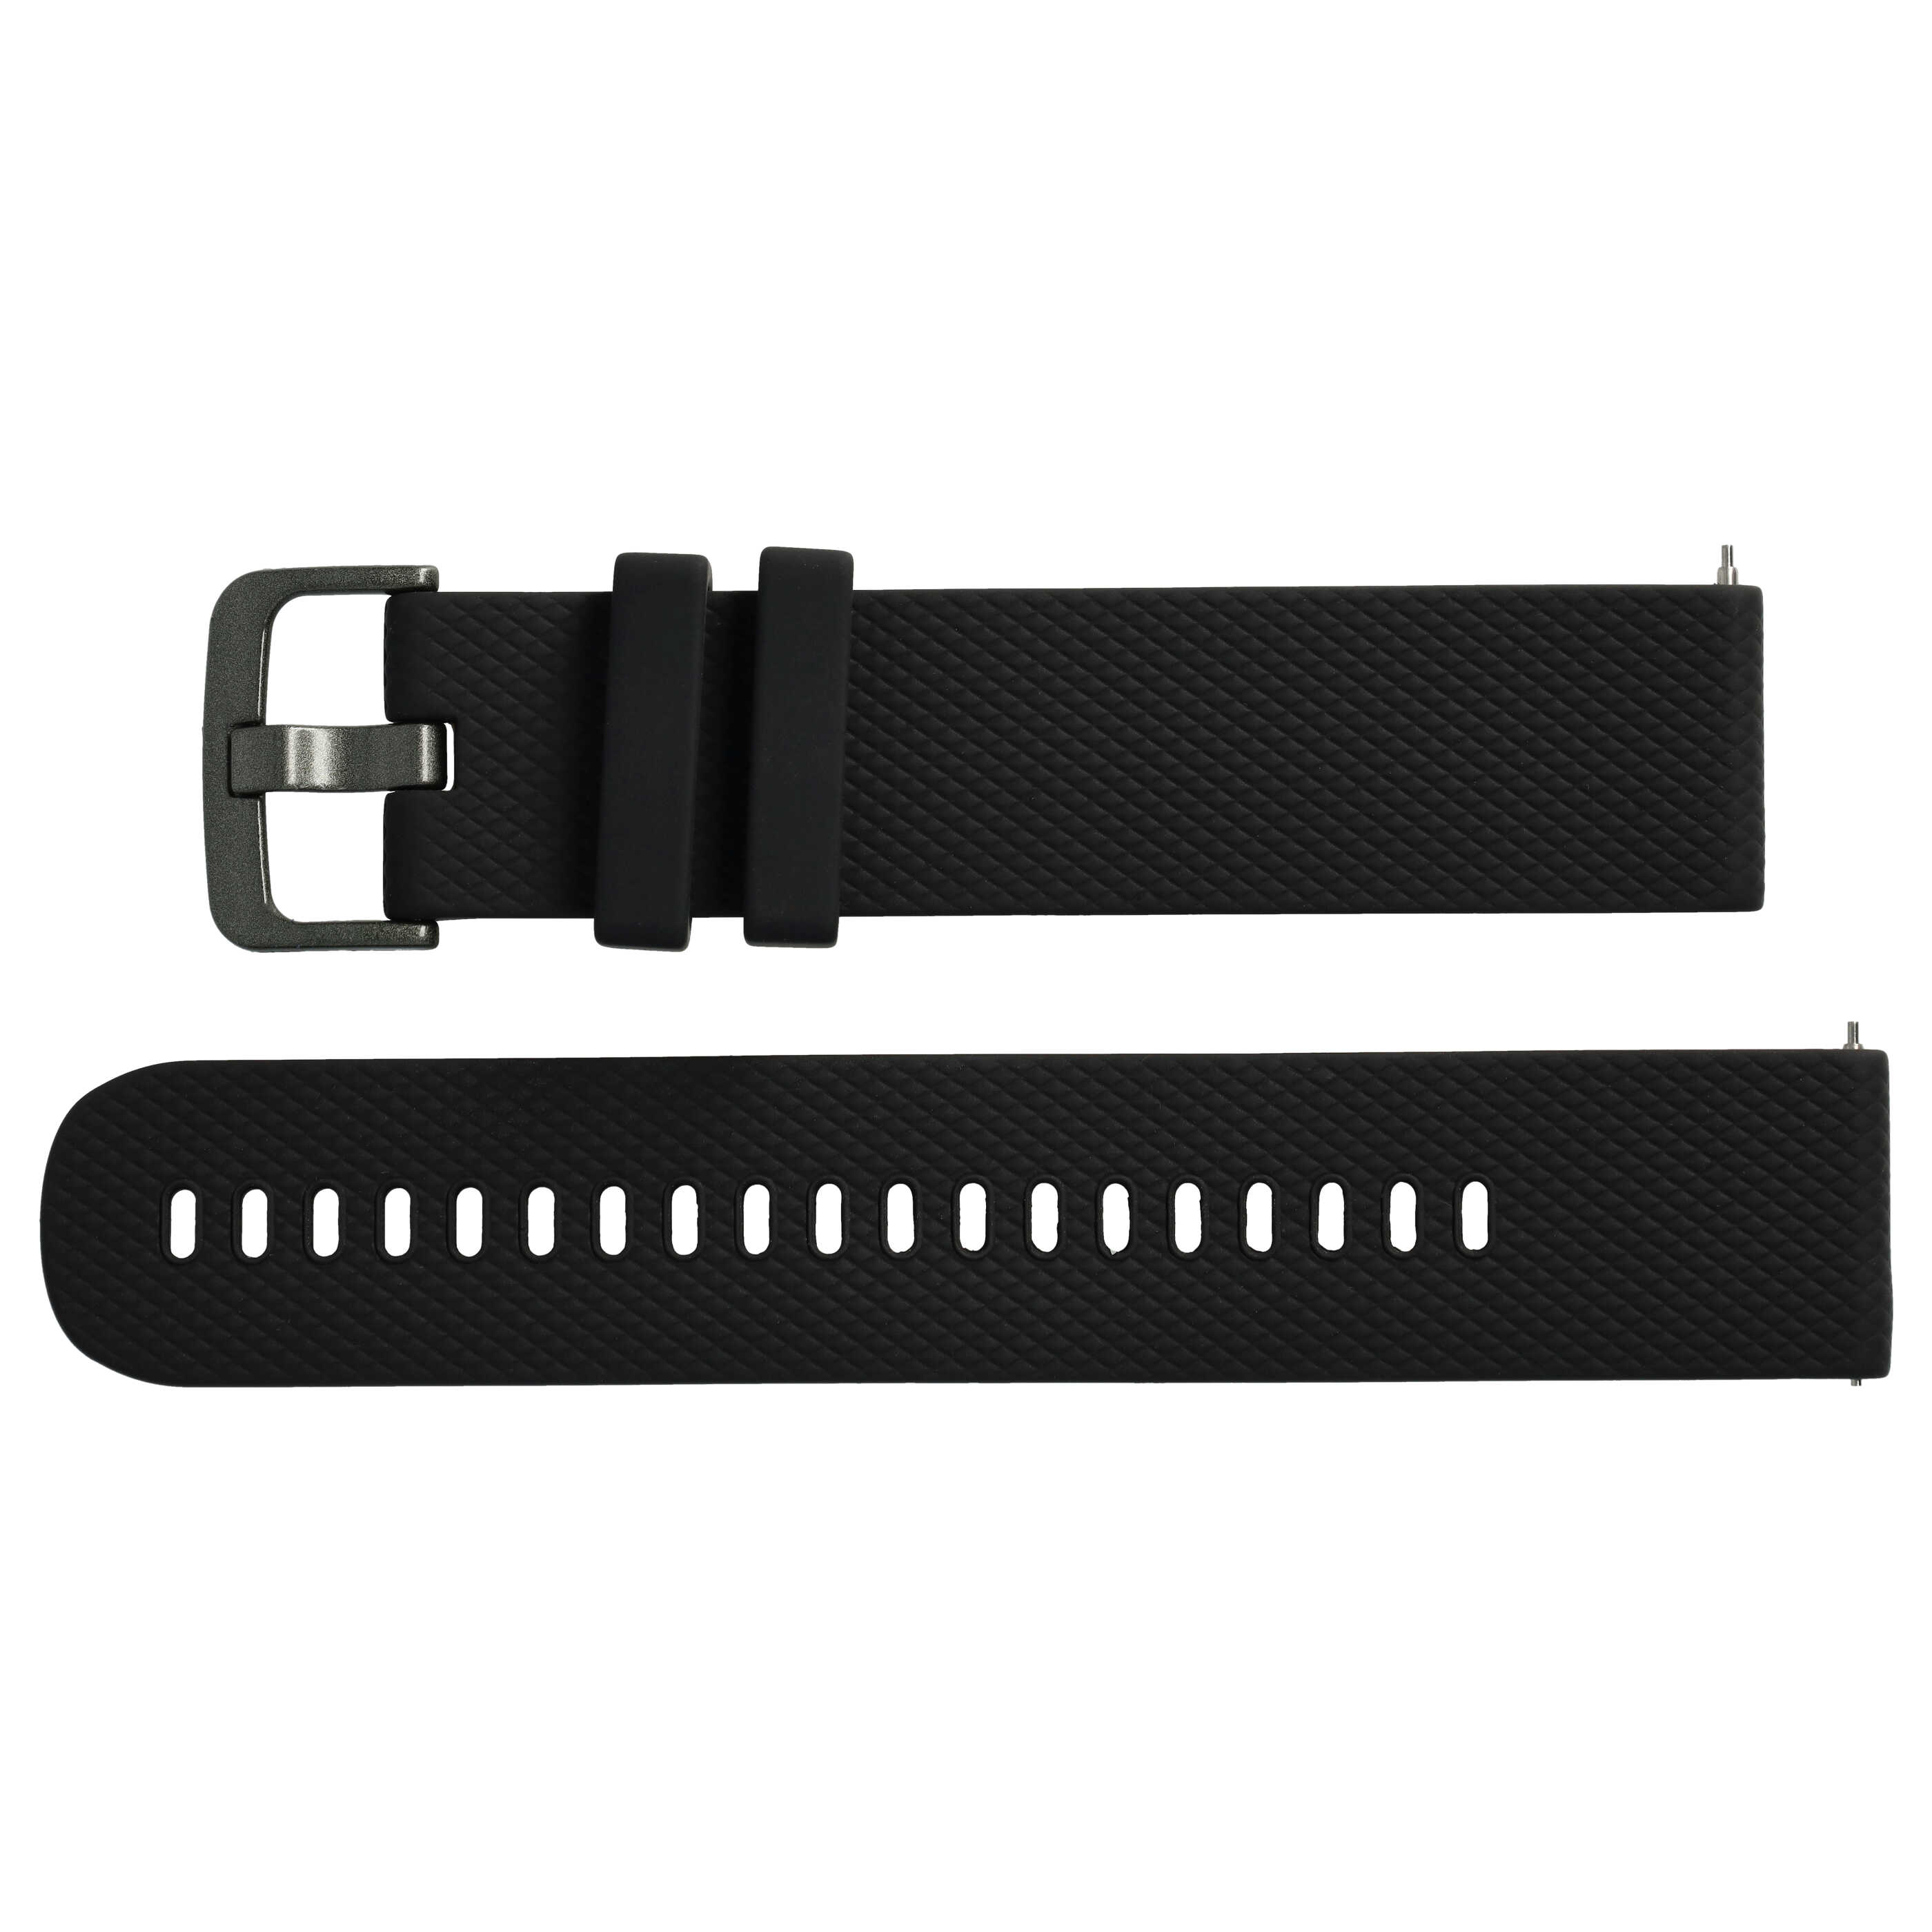 Pasek L do smartwatch Samsung Galaxy Watch - obwód nadgarstka do 270 mm , silikon, czarny